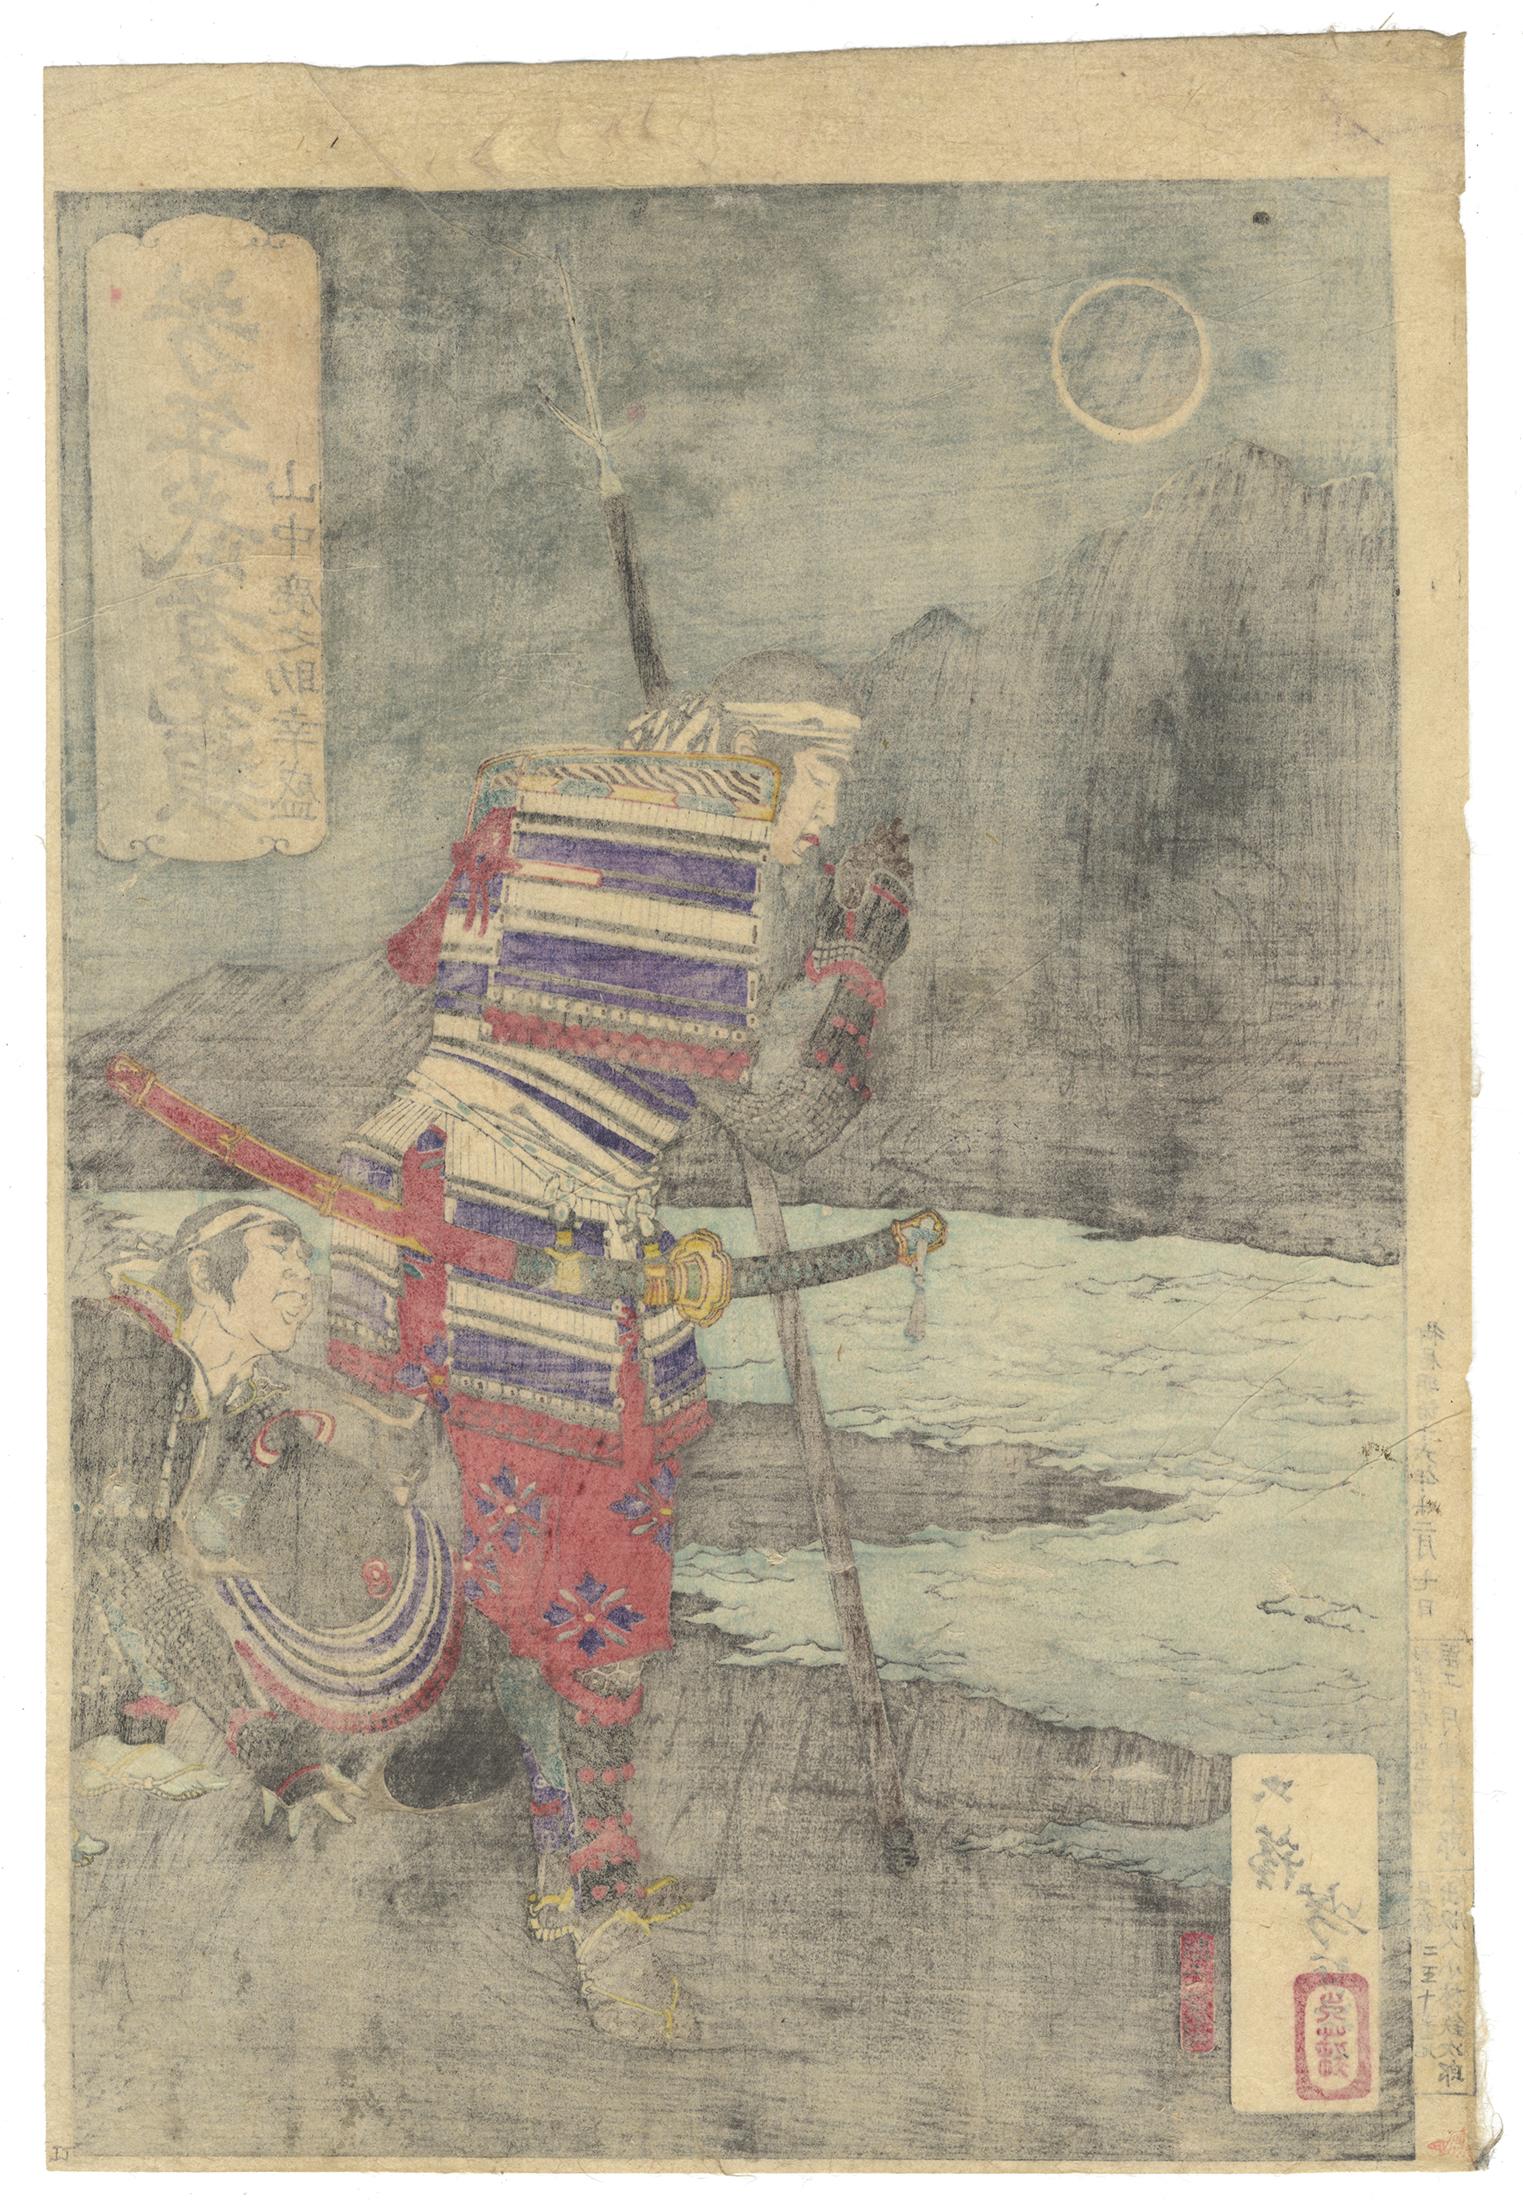 Artist: Yoshitoshi Tsukioka (1839-1892)
Title: Yamanaka Shikanosuke Yukimori Praying
Series: Yoshitoshi's Courageous Warriors
Publisher: Kobayashi Tetsujiro
Date: 1883
Dimensions: 24.3 x 36.1 cm

Yamanaka Yukimori (1545-1578), a loyal samurai